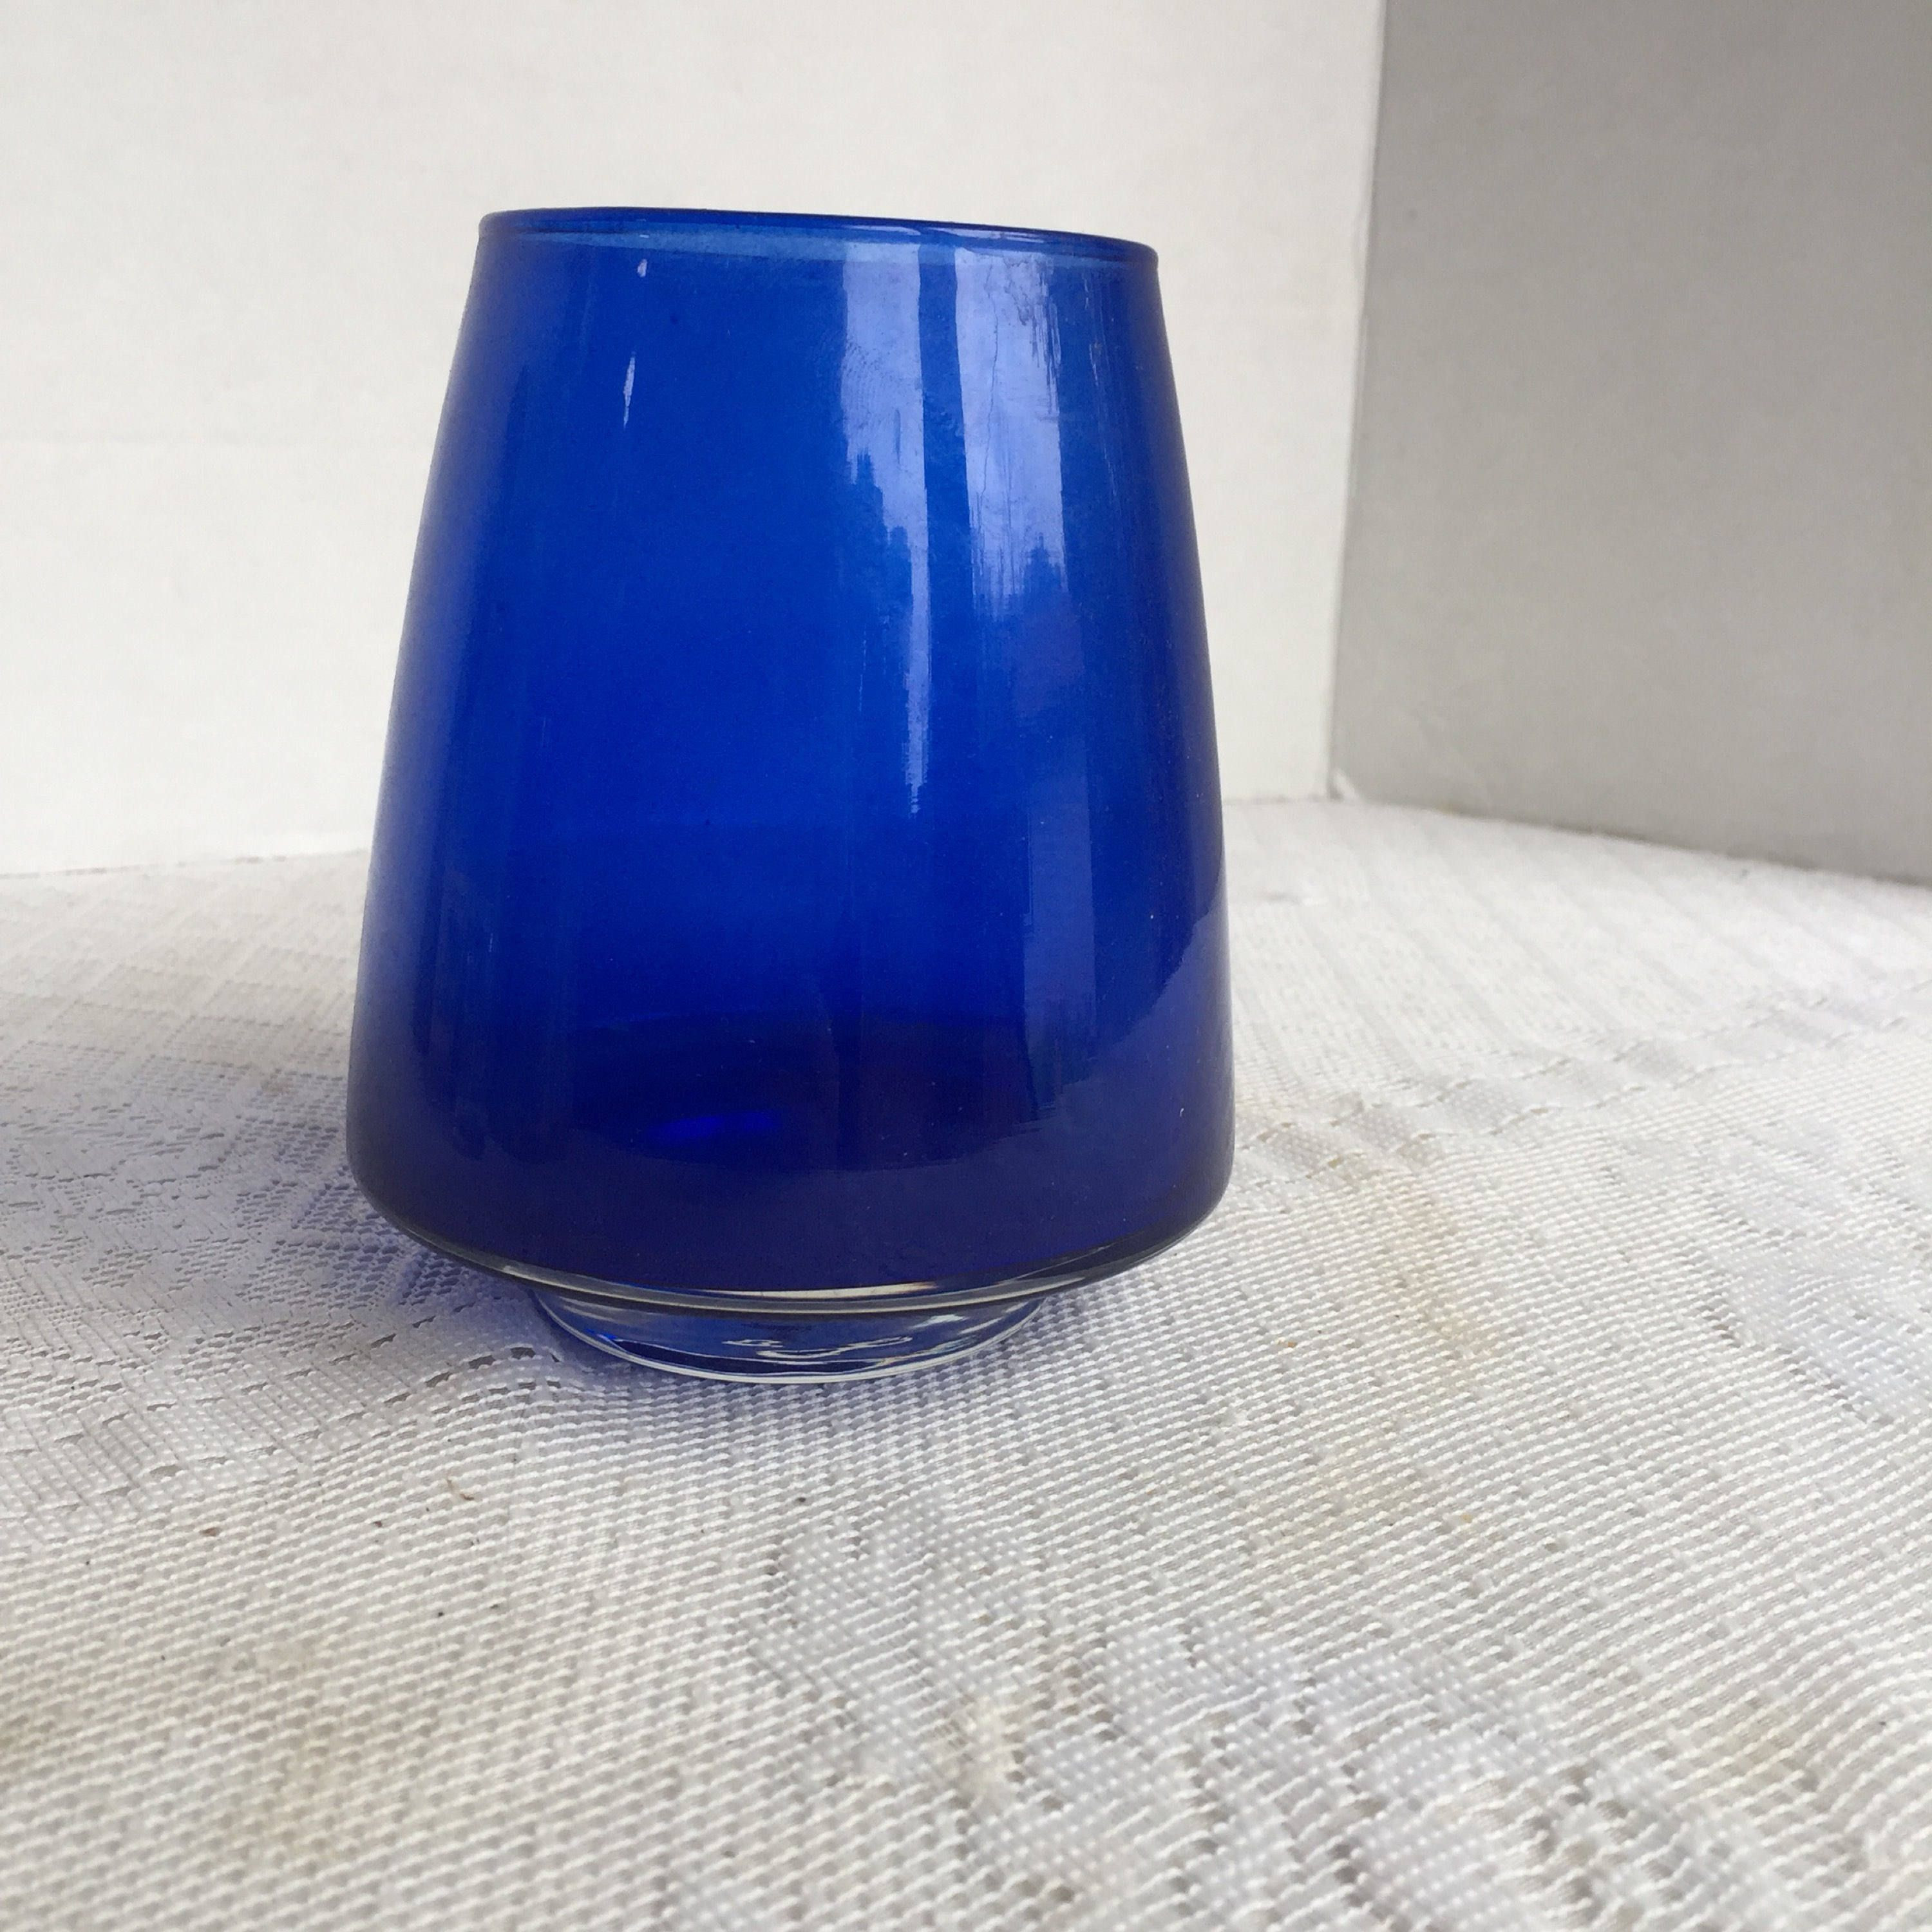 cobalt blue flower vase of cobalt blue glass cone shaped vase vintage seventies floral pertaining to cobalt blue glass cone shaped vase vintage seventies floral supplies by vintagepoetic on etsy